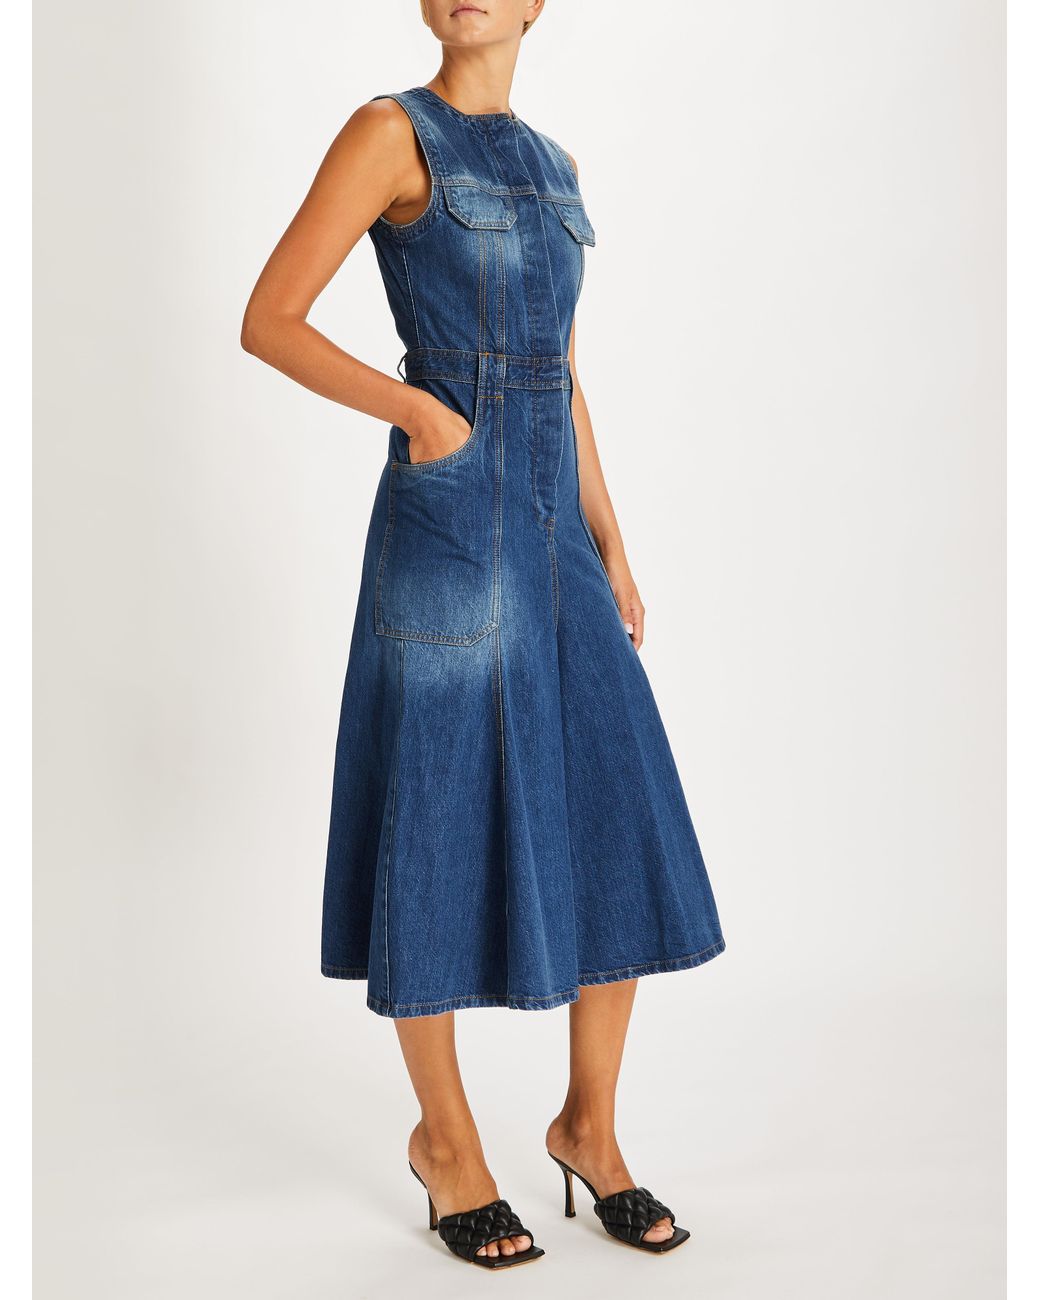 Victoria Beckham Denim Midi Dress in Blue | Lyst